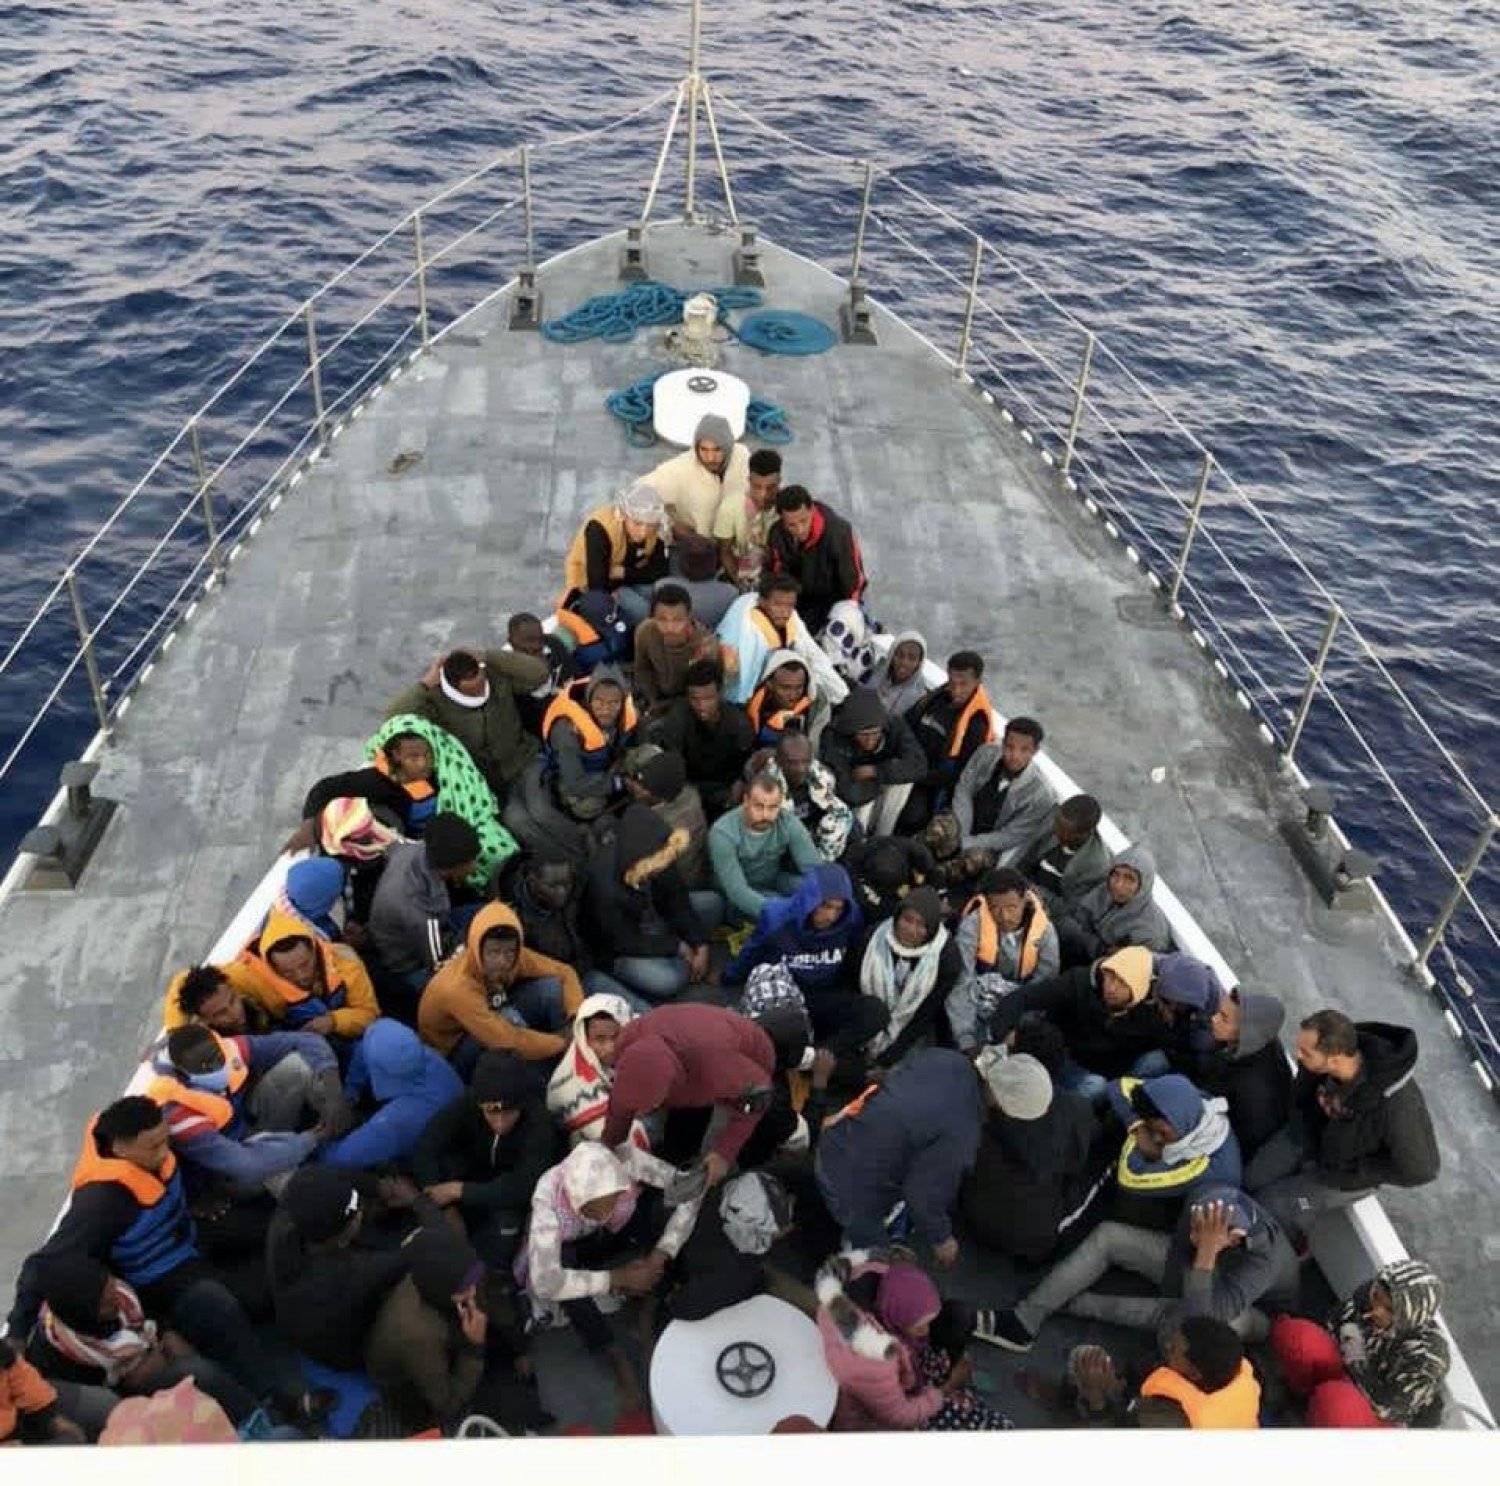 قارب محمل بعشرات المهاجرين السريين المتجهين لأوروبا (الشرق الأوسط)